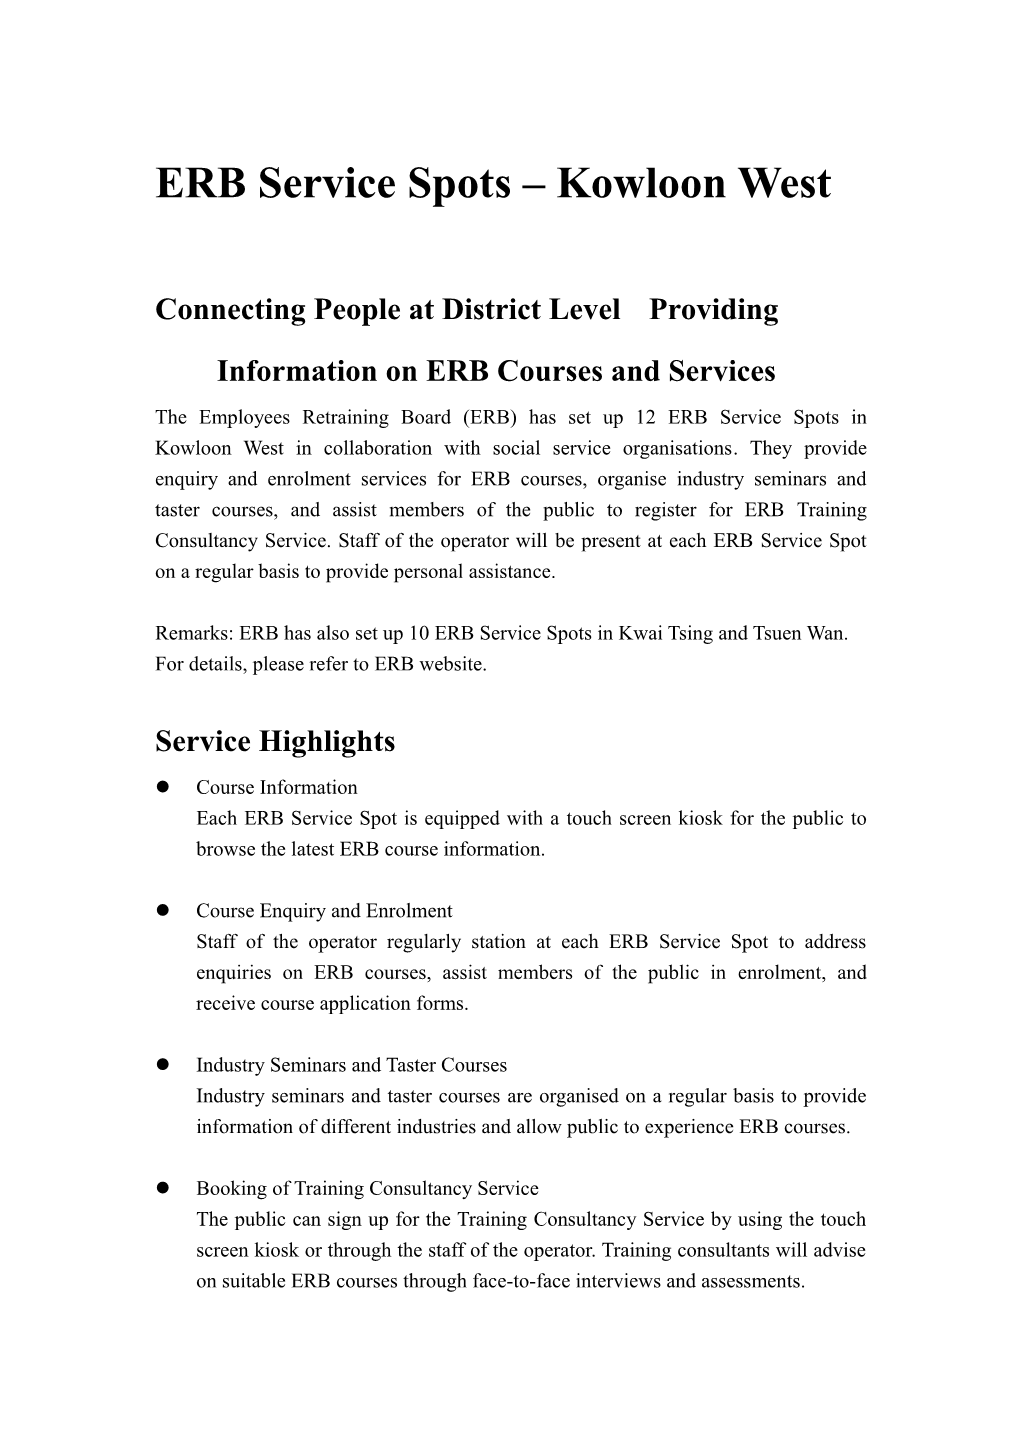 ERB Service Spots (Kowloon West) (April 2018) - Leaflet